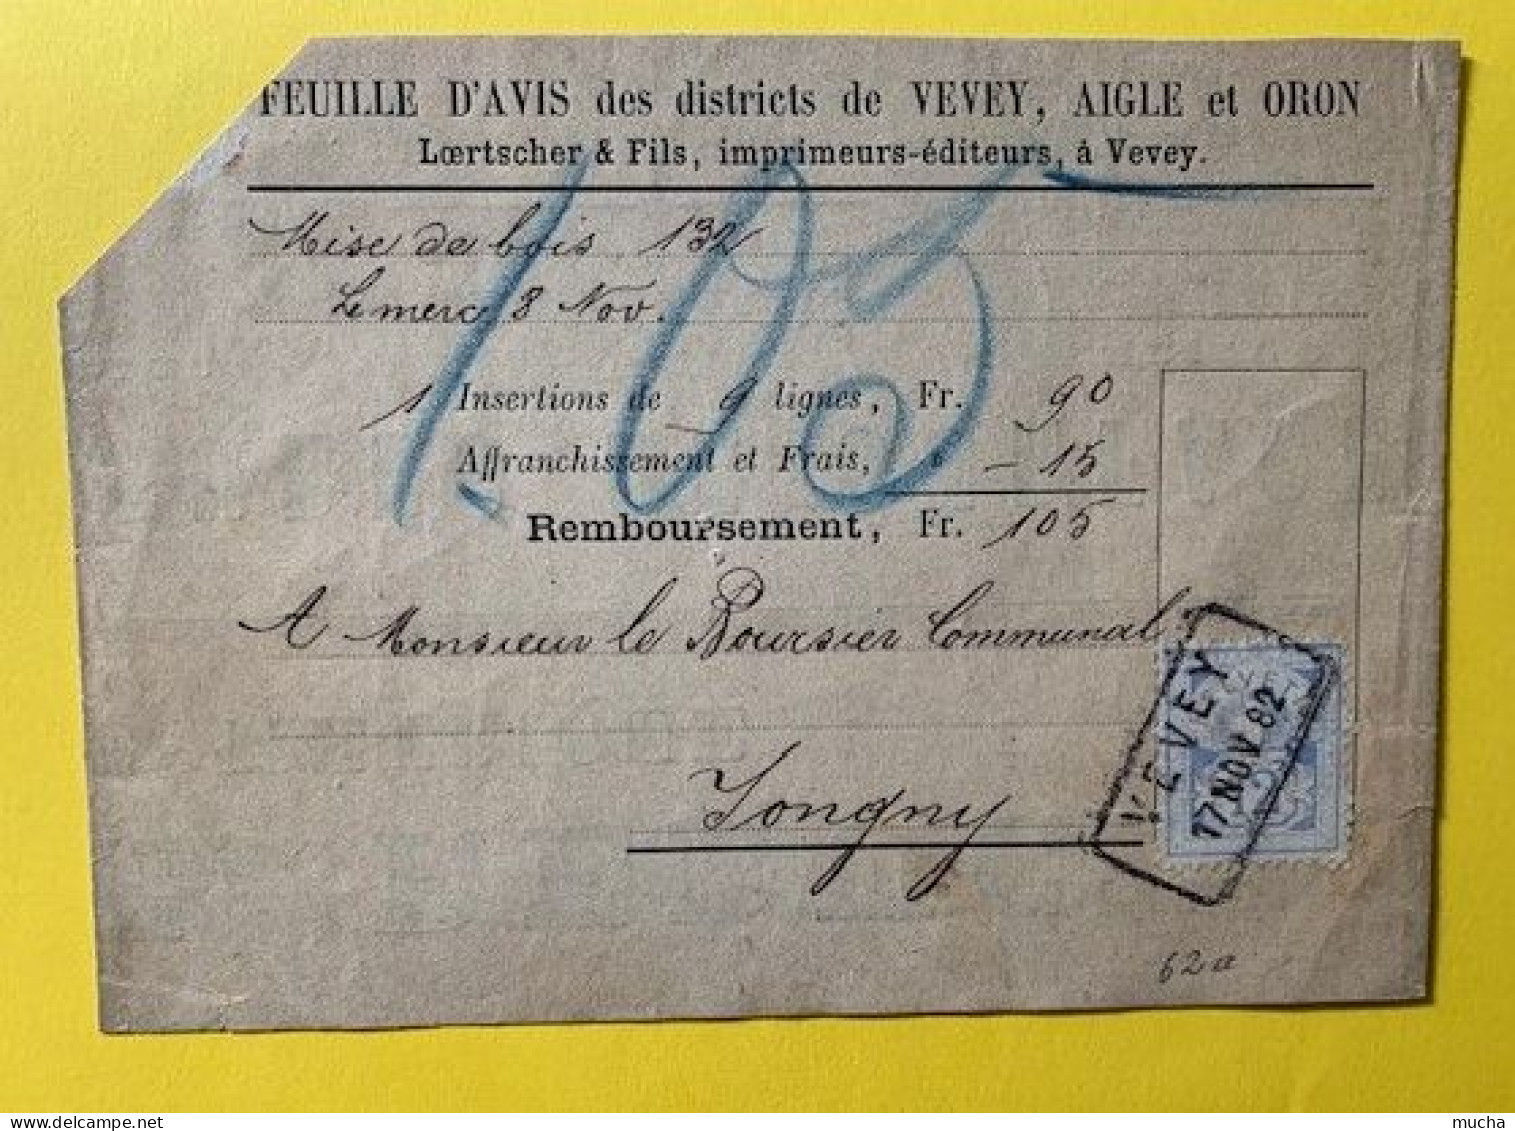 20373 - Remboursement Feuille D'avis Des Districts De Vevey Aigle & Oron Timbre Zst No 62A  Vevey 17.11.1882 - Briefe U. Dokumente